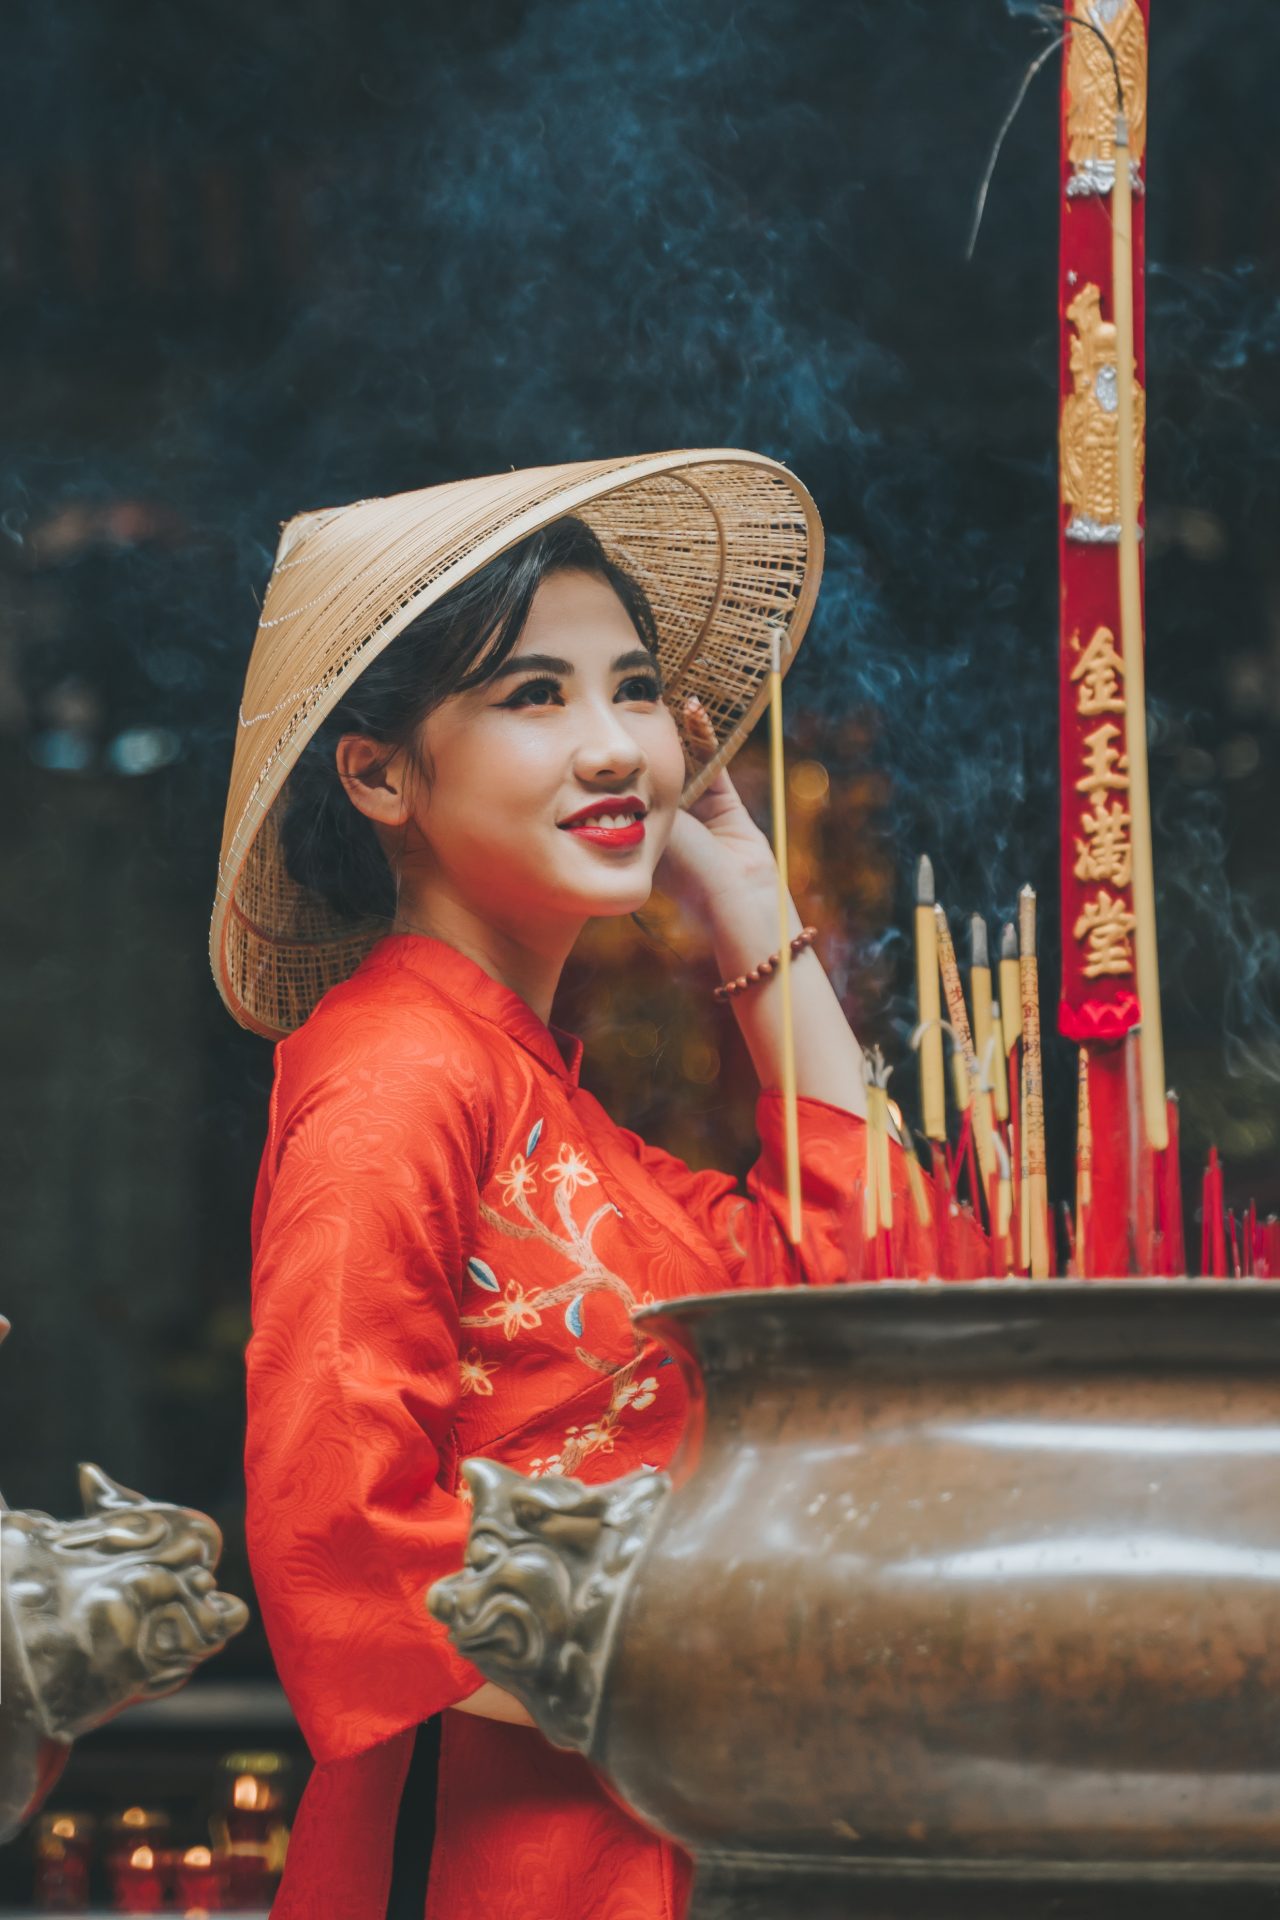 Cách tân: Những bộ trang phục áo dài cách tân luôn làm nổi bật vẻ đẹp hiện đại, táo bạo và sáng tạo. Hãy cùng xem những hình ảnh này để nhận ra sự đa dạng, phong cách mới trong phong cách thời trang Việt Nam.